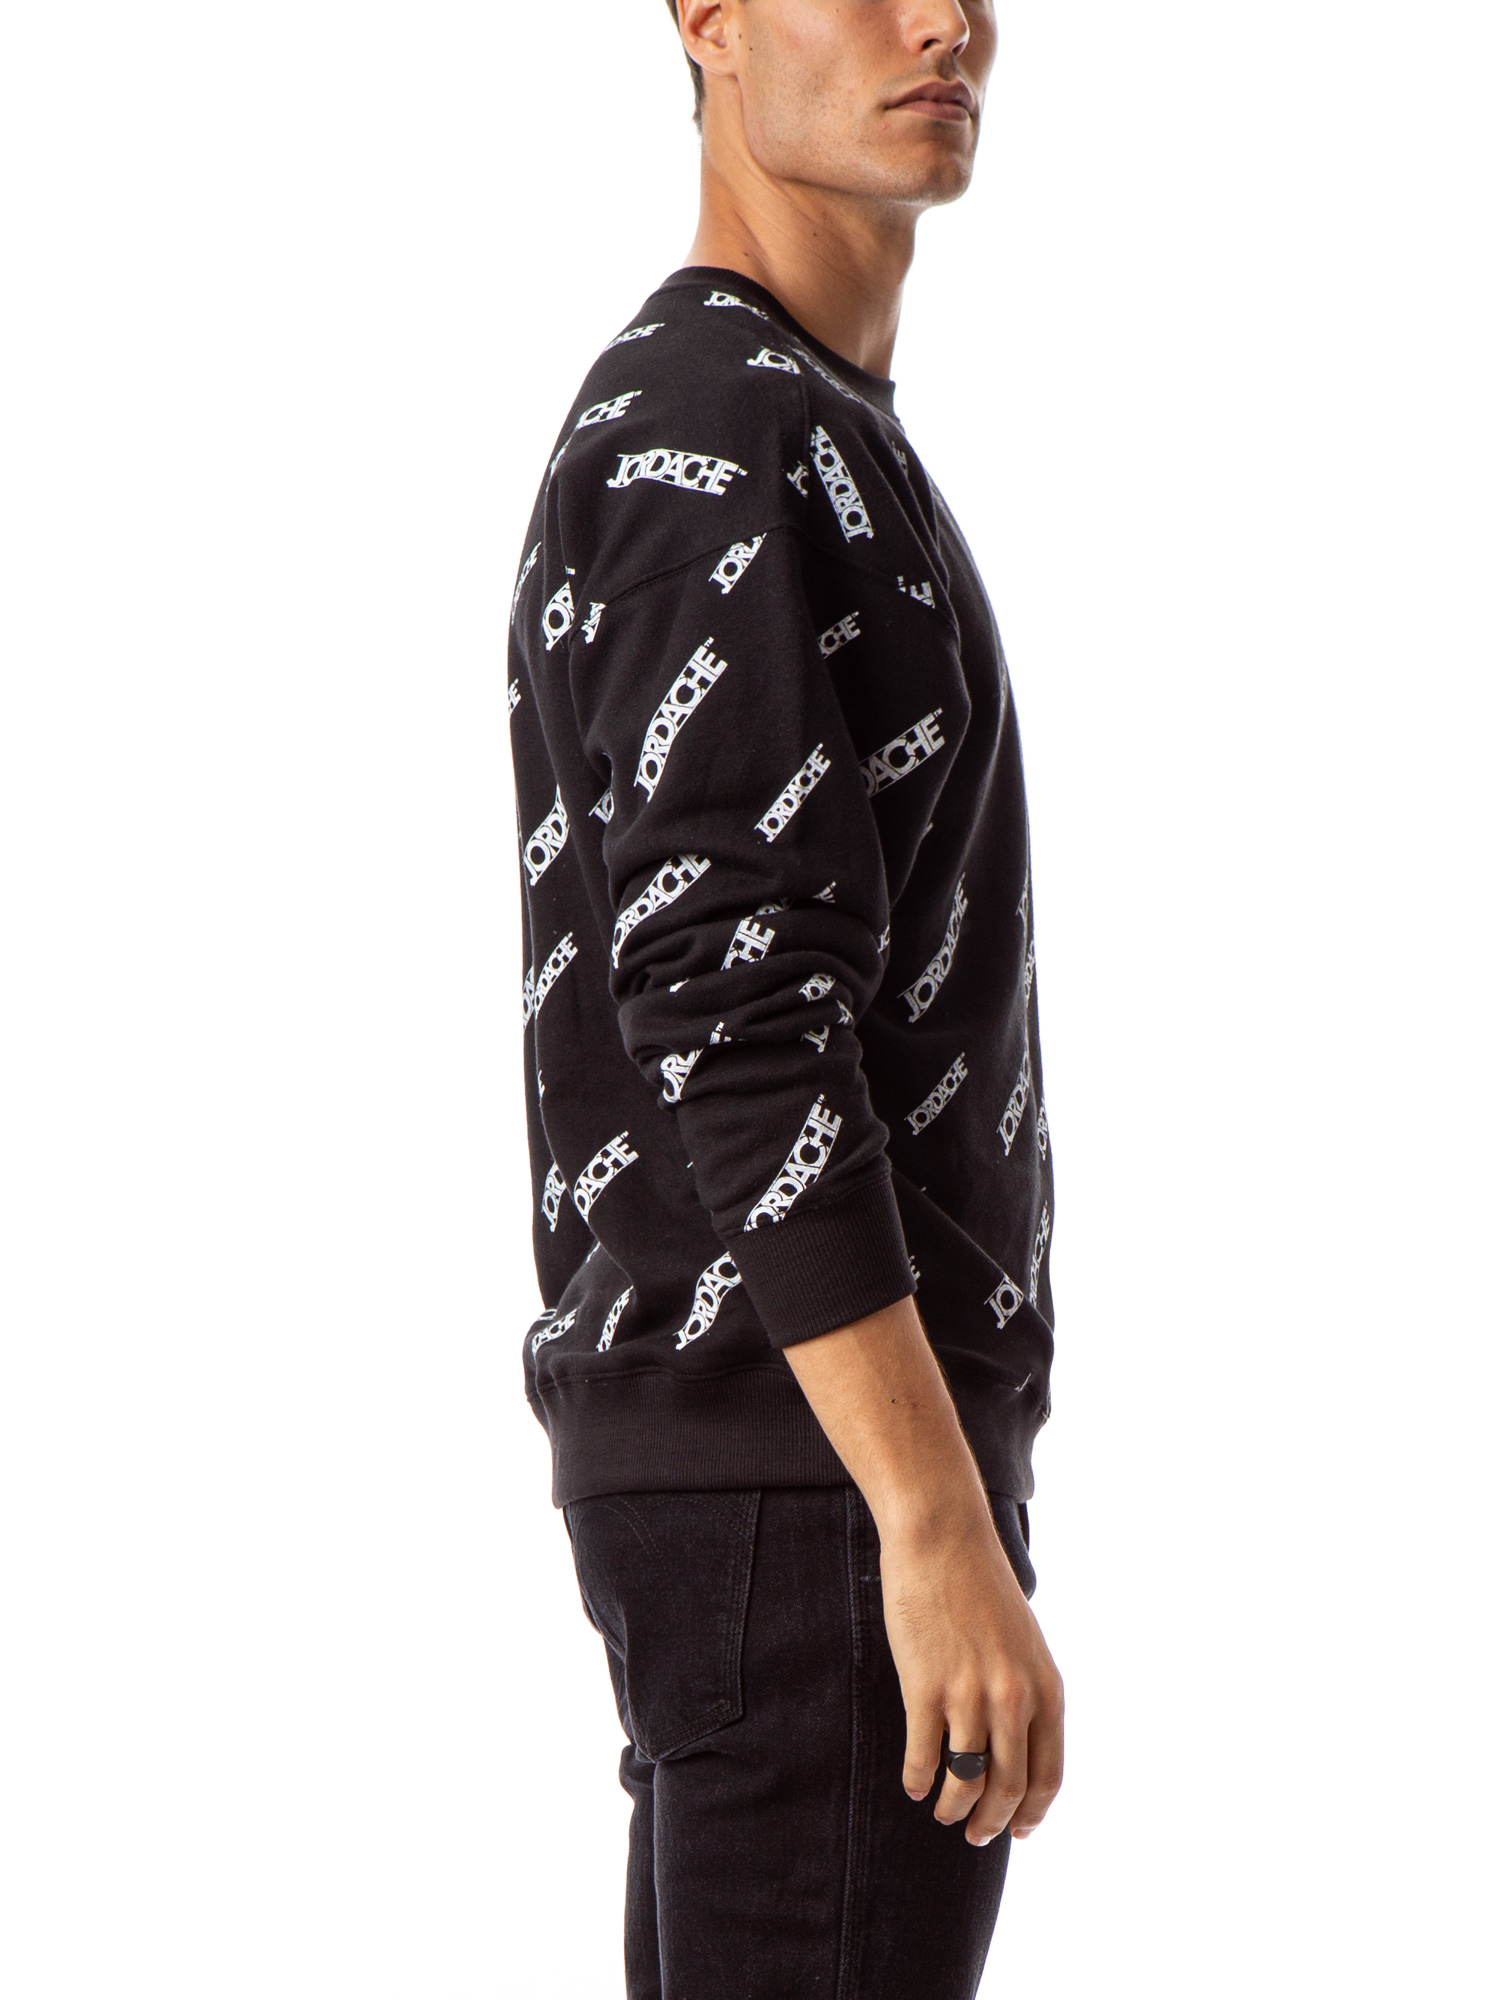 Jordache Vintage Men's Alex Crewneck Sweatshirt, Sizes S-2XL - image 3 of 8